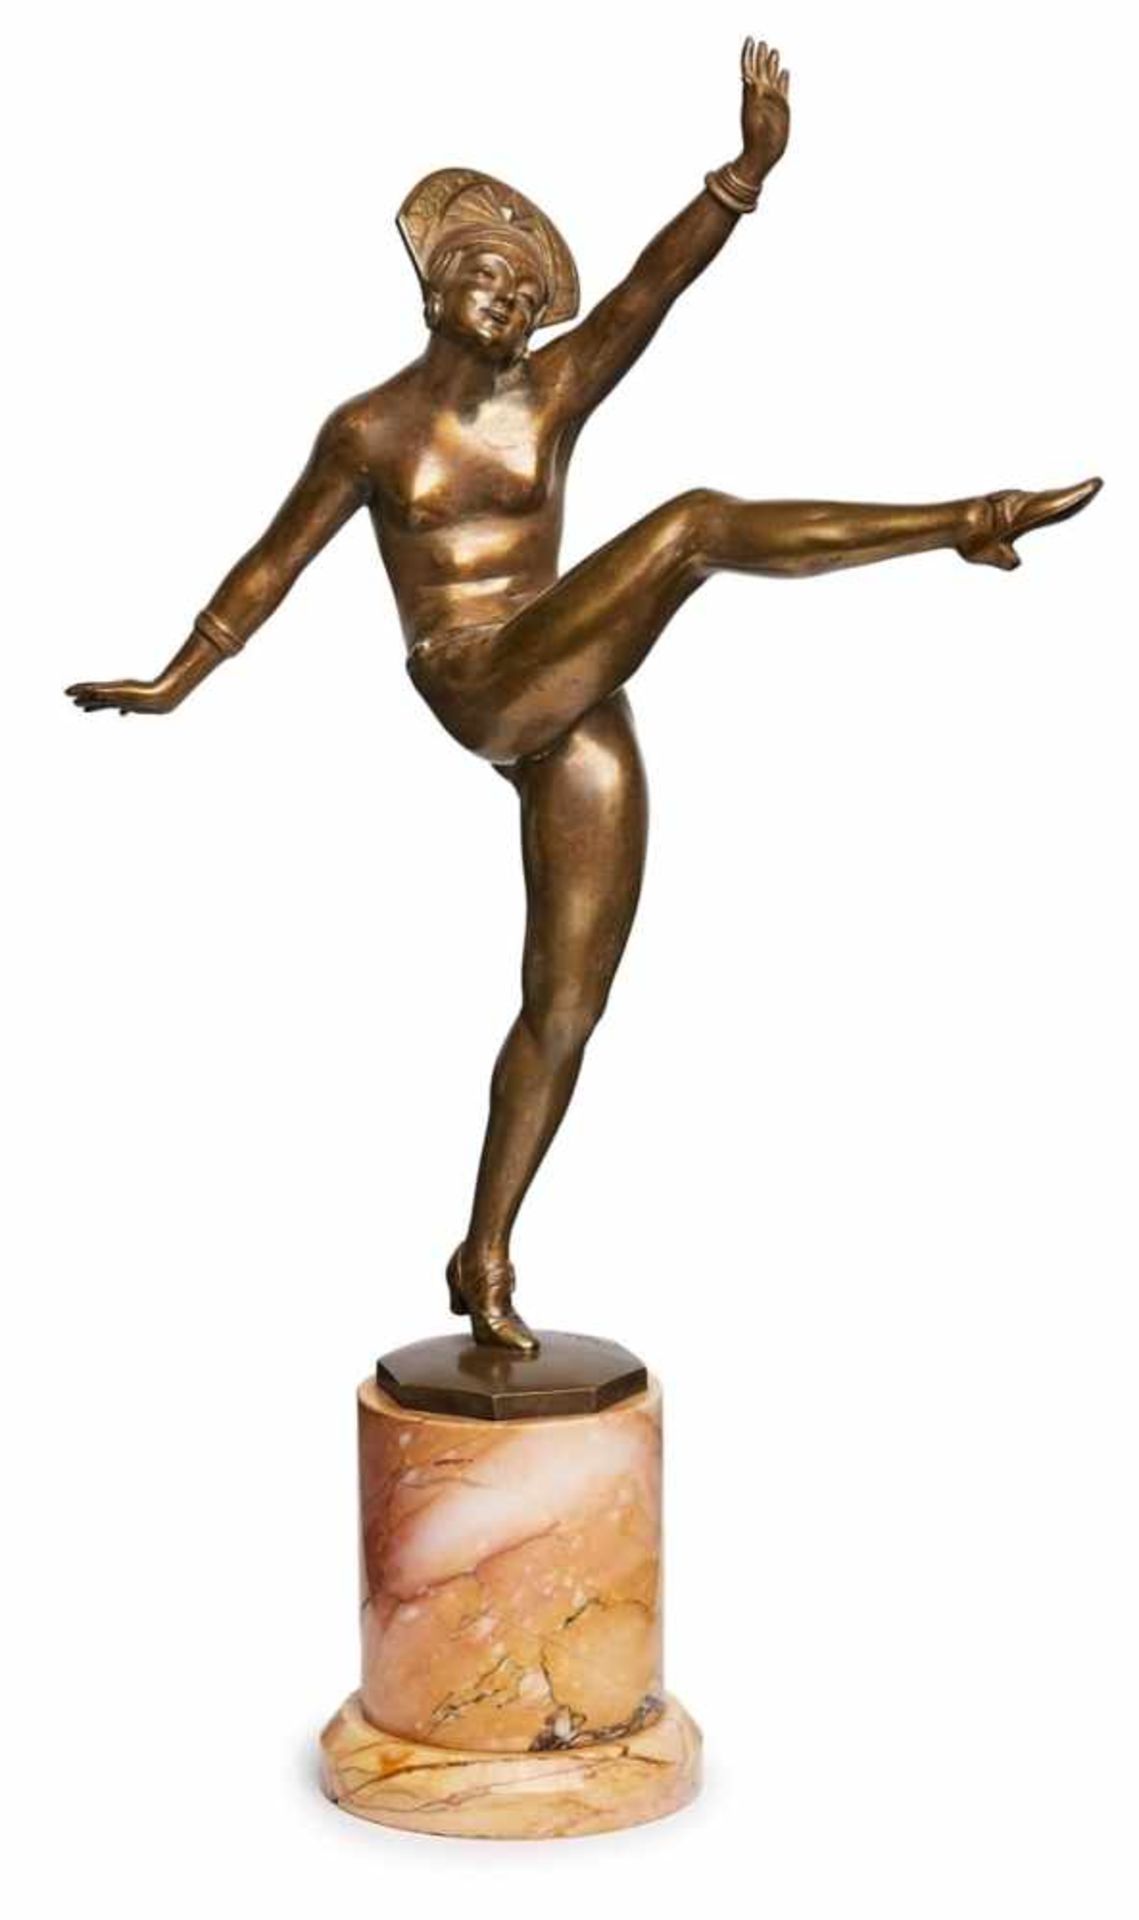 Bronze Jean Pierre Morante(Frankreich, 1882 - 1960) "High Kicker" um 1920. Braun-gold-patiniert, auf